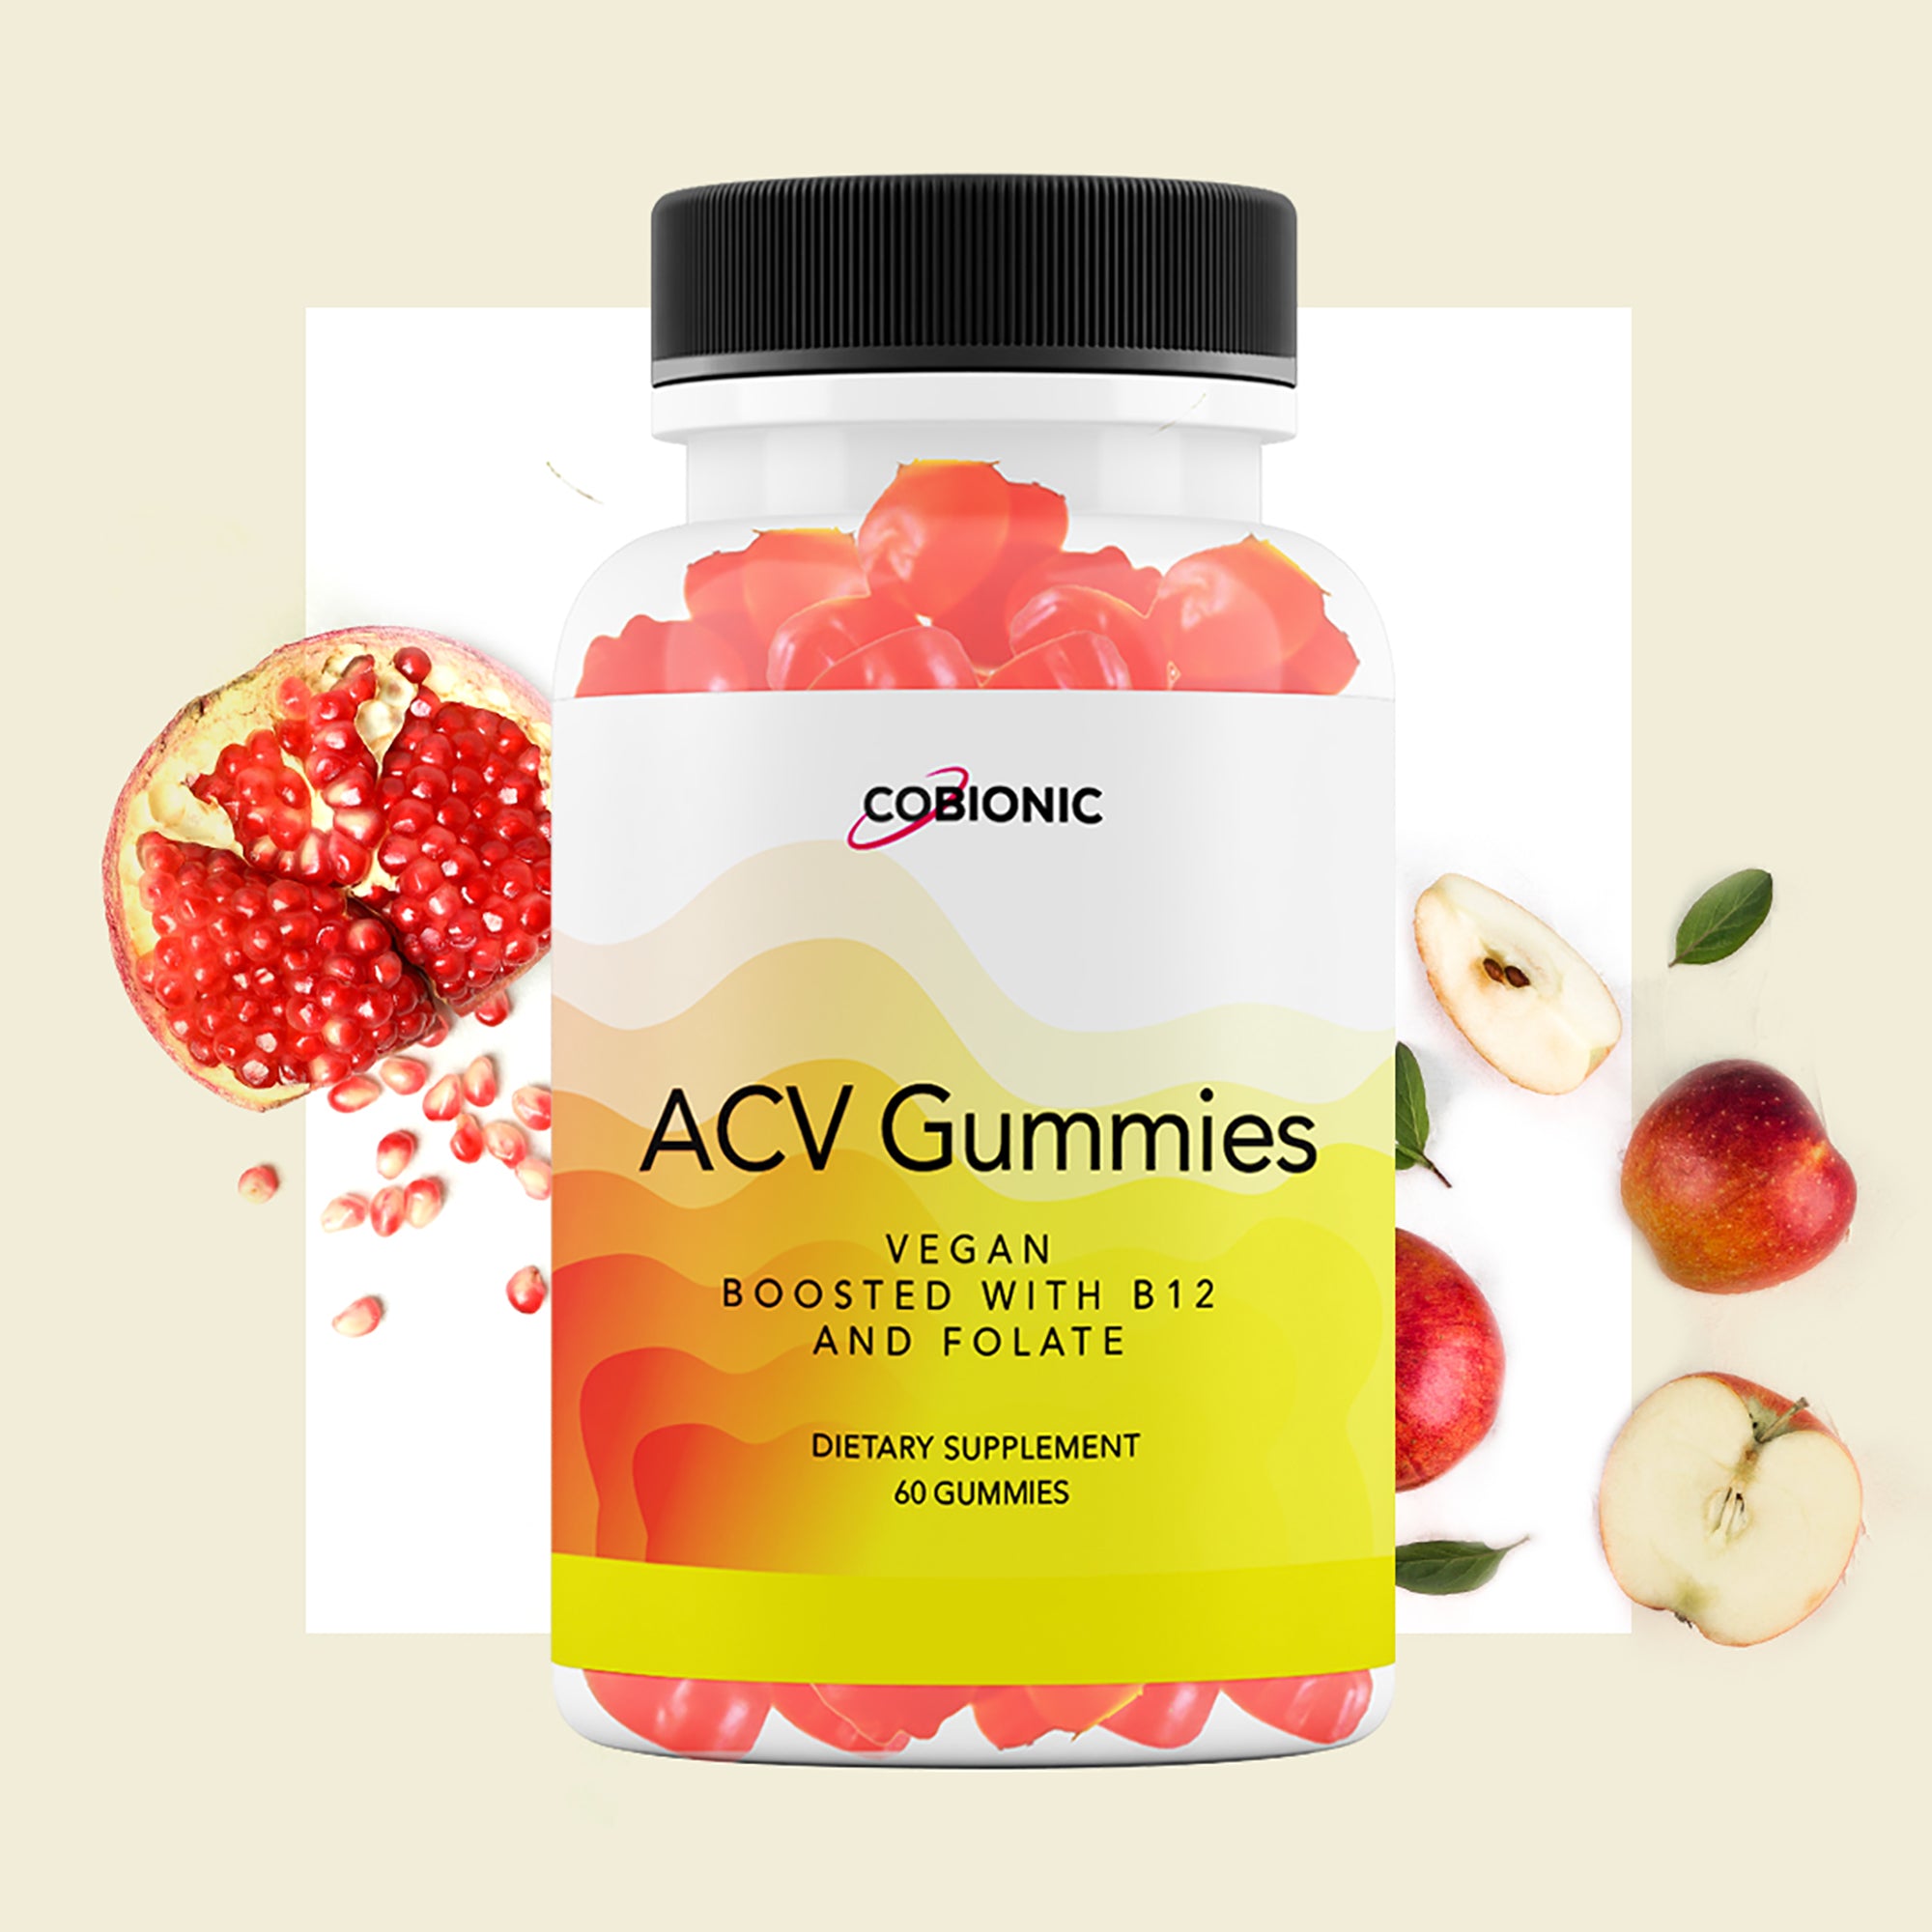 ACV Gummies